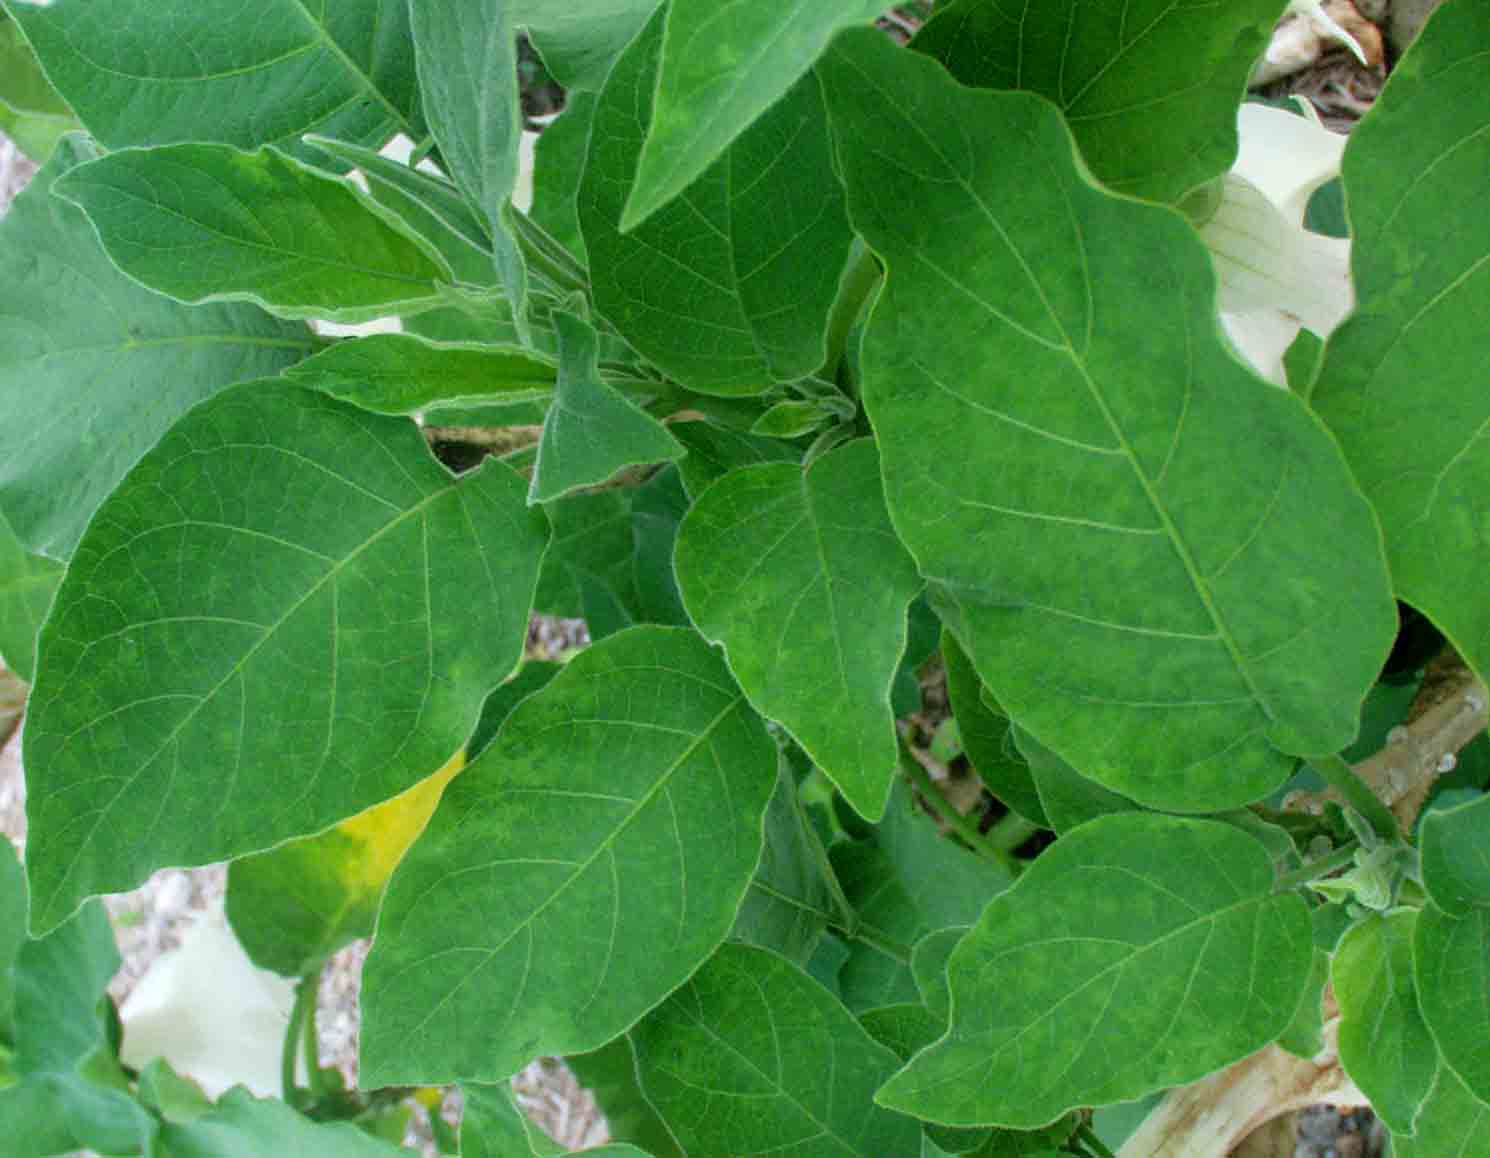 Leaf symptoms showing faint chlorotic spots